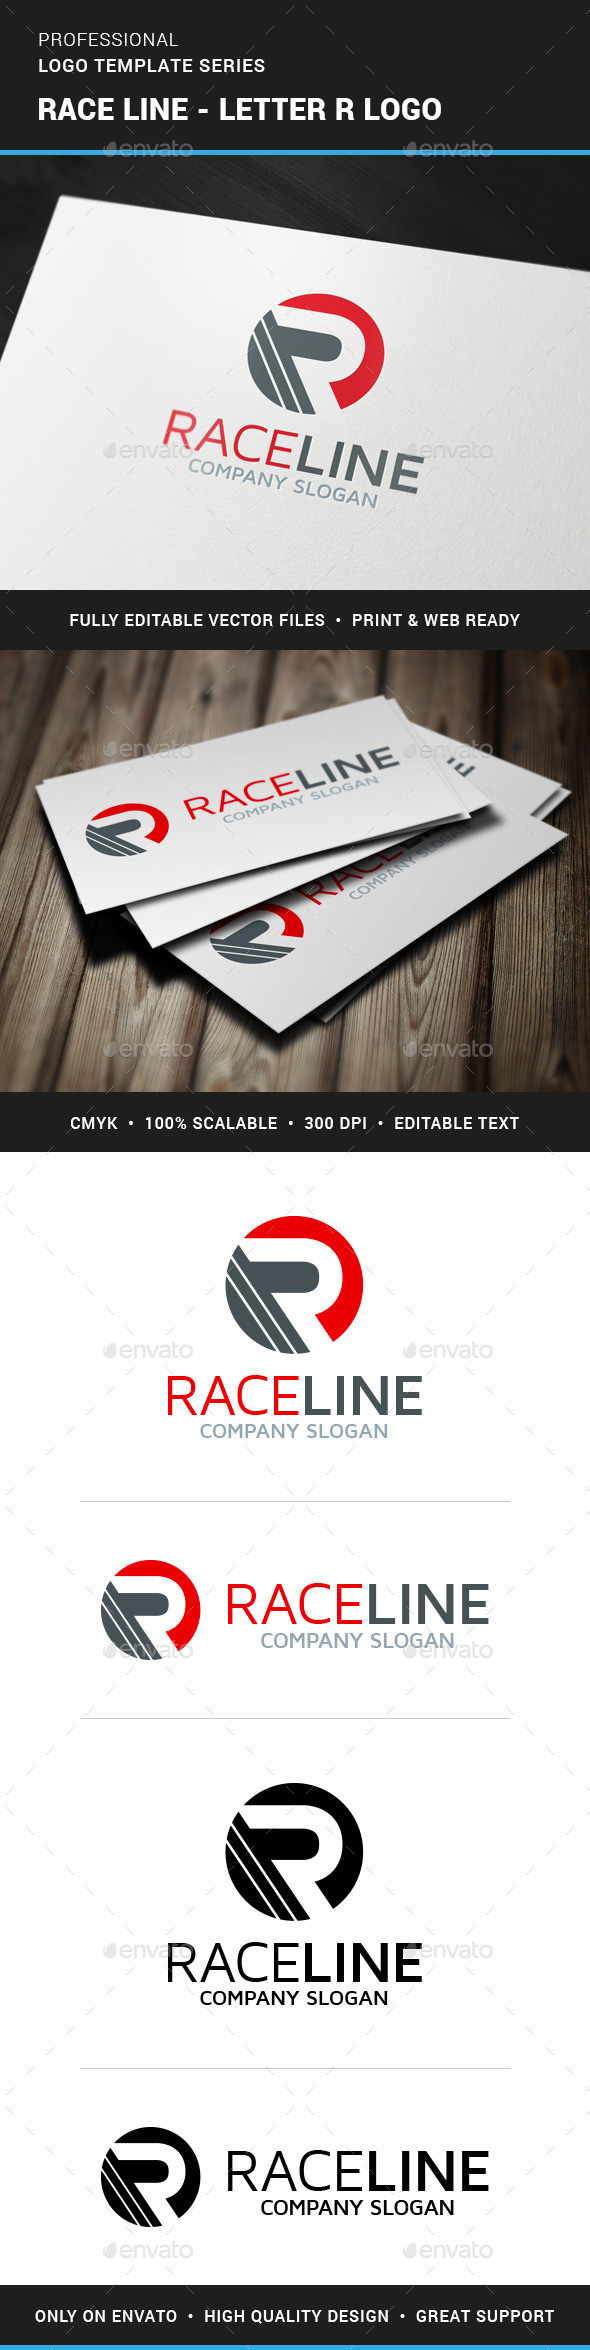 Race line logo template